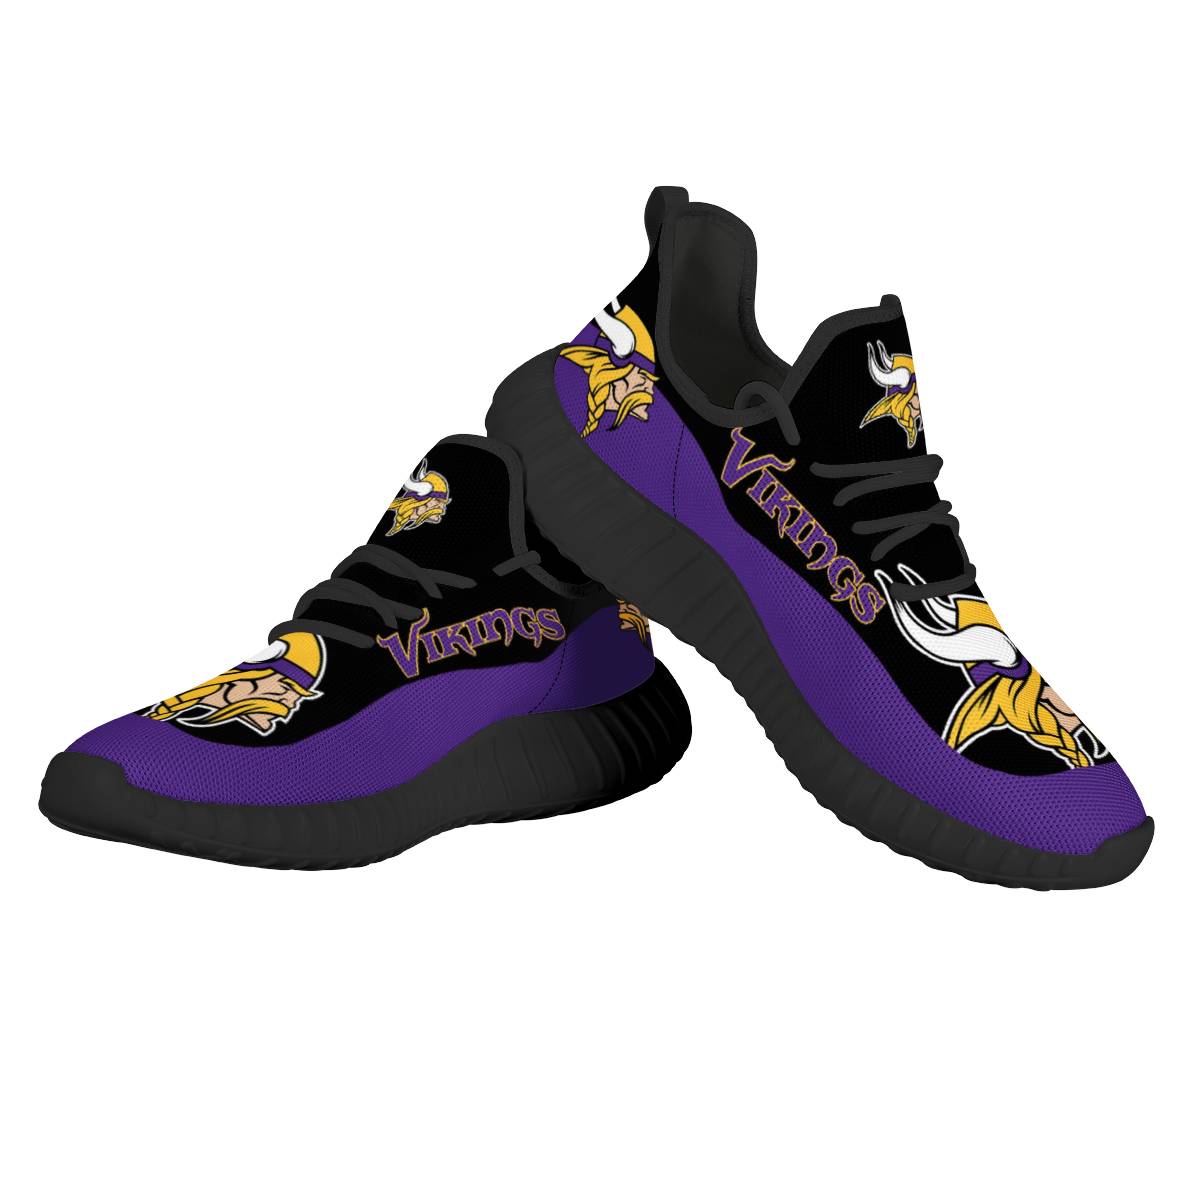 Men's NFL Minnesota Vikings Mesh Knit Sneakers/Shoes 006